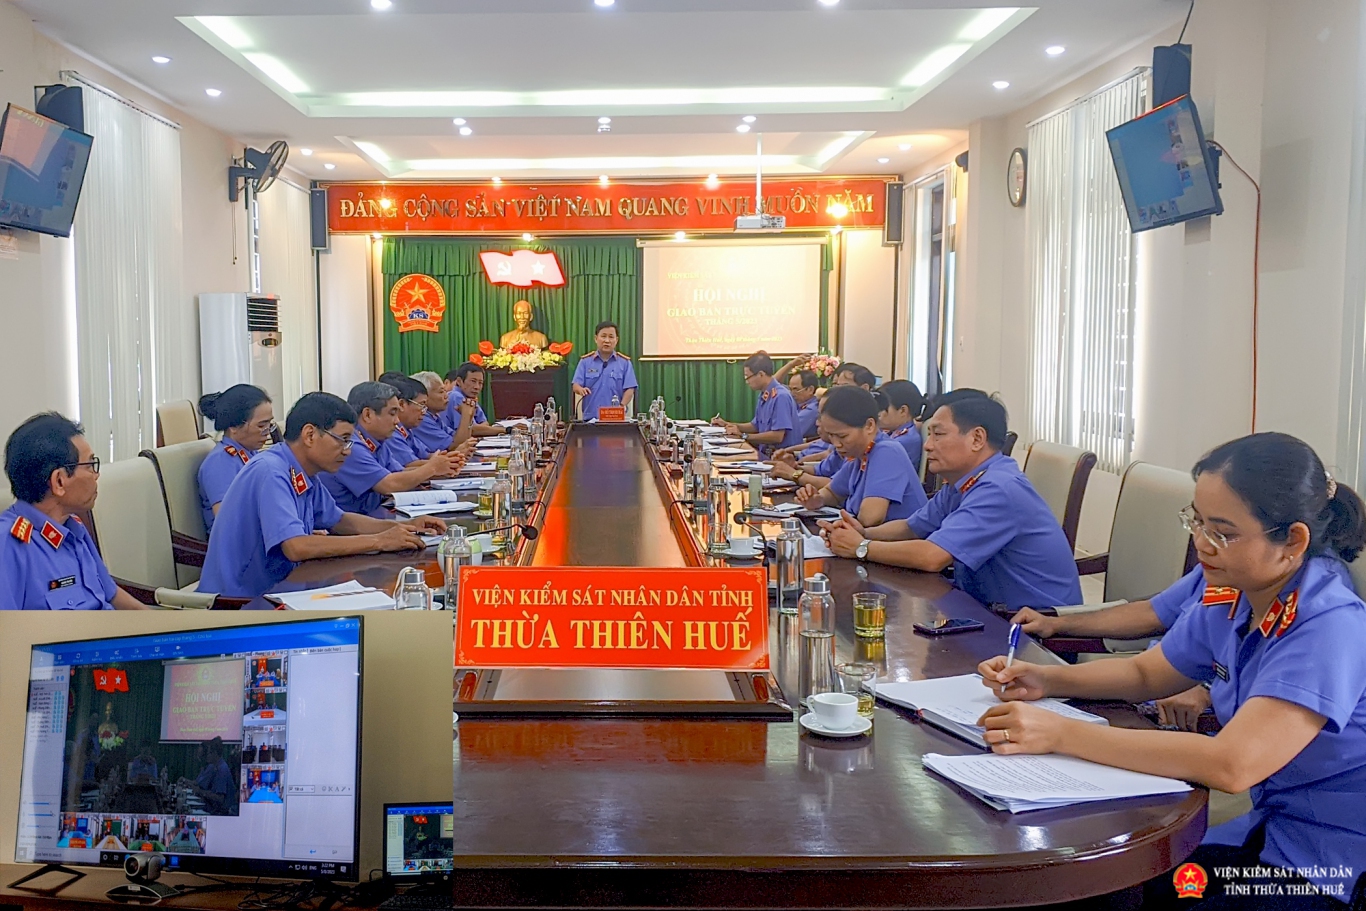 Viện kiểm sát nhân dân tỉnh Thừa Thiên Huế giao ban trực tuyến hai cấp